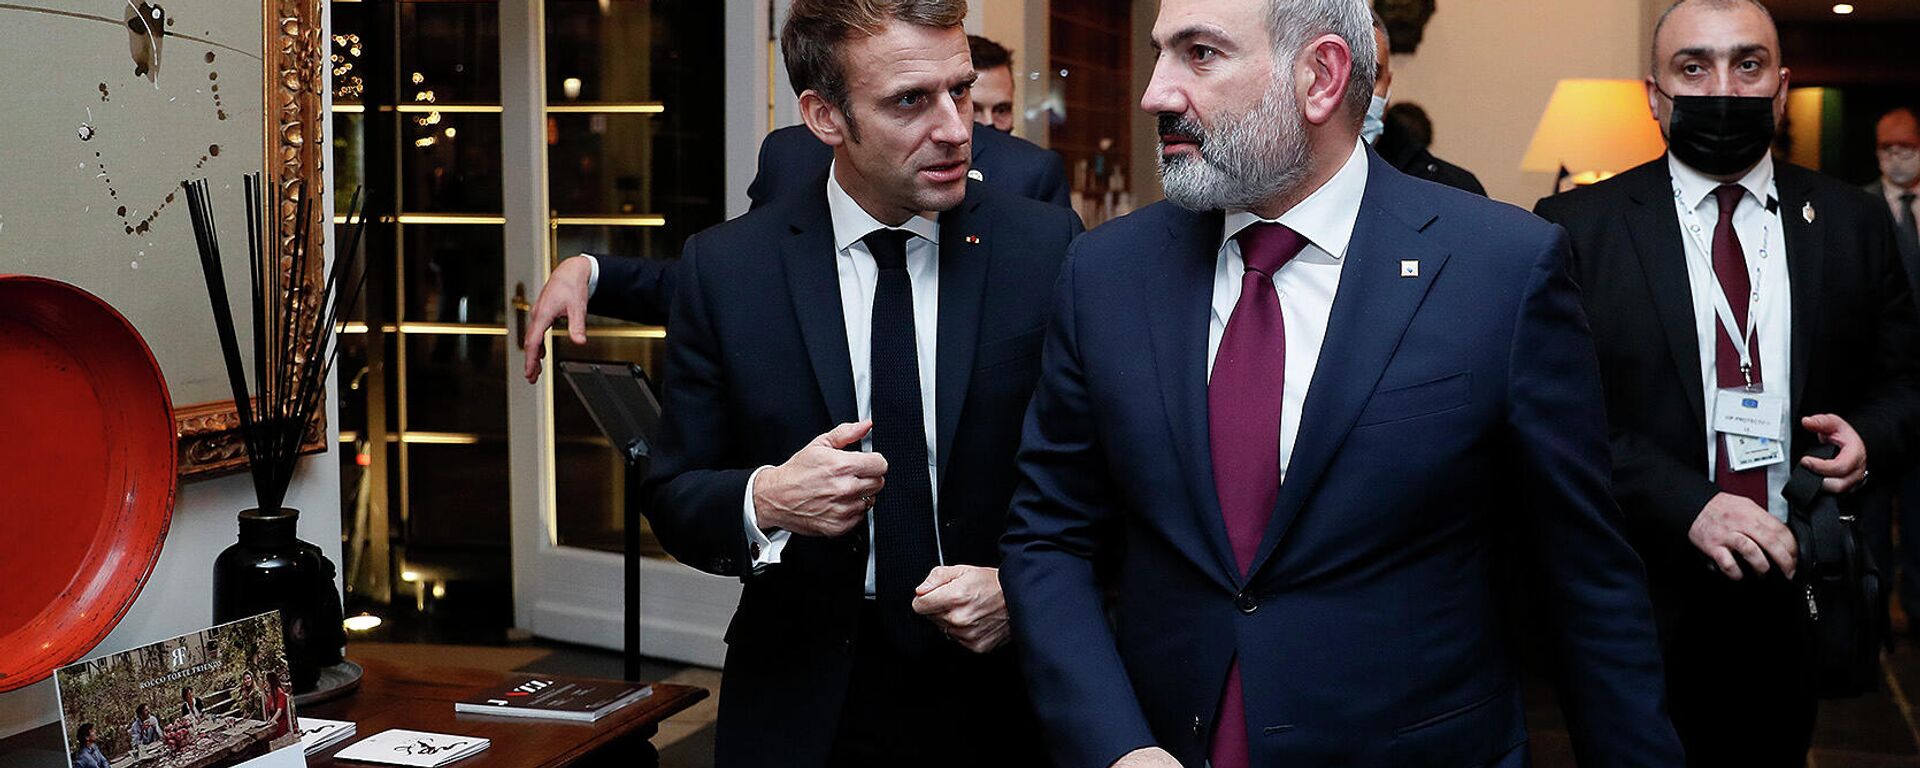 Встреча лидеров Армении и Франции Никола Пашиняна и Эммануэля Макрона (15 декабря 2021). Брюссель - Sputnik Армения, 1920, 16.12.2021